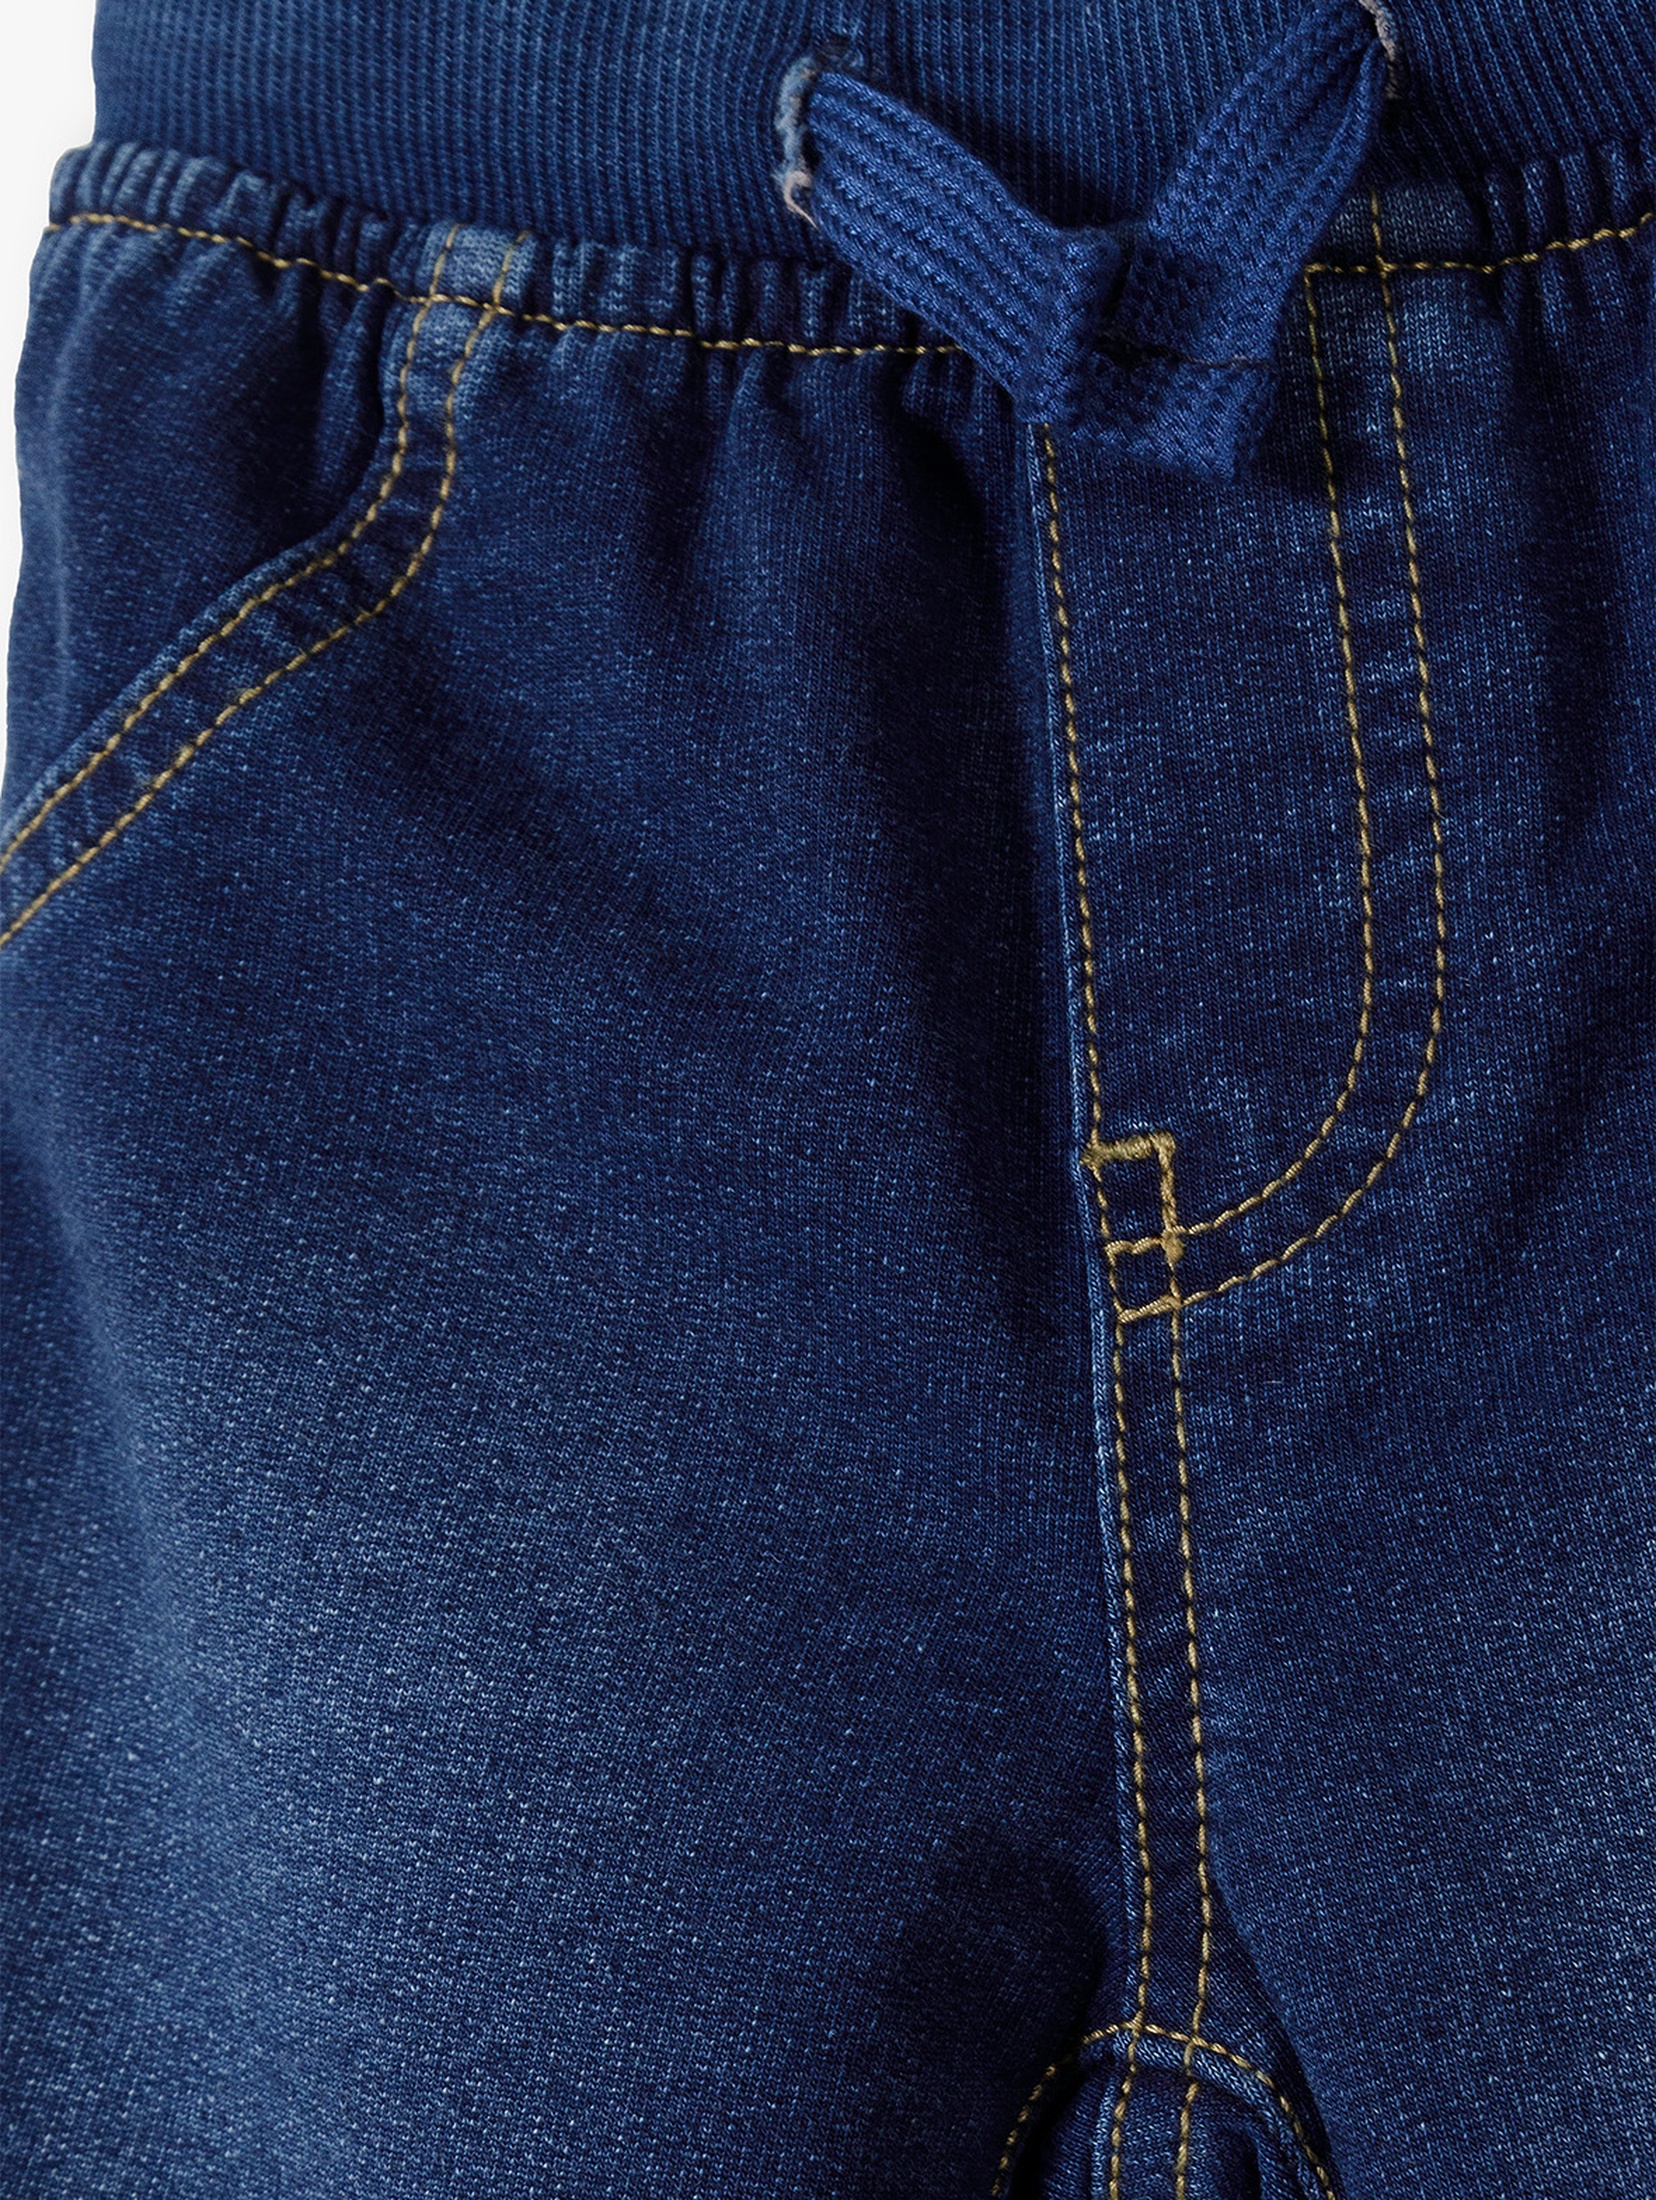 Dzianinowe spodnie jogery z imitacji jeansu - 5.10.15.